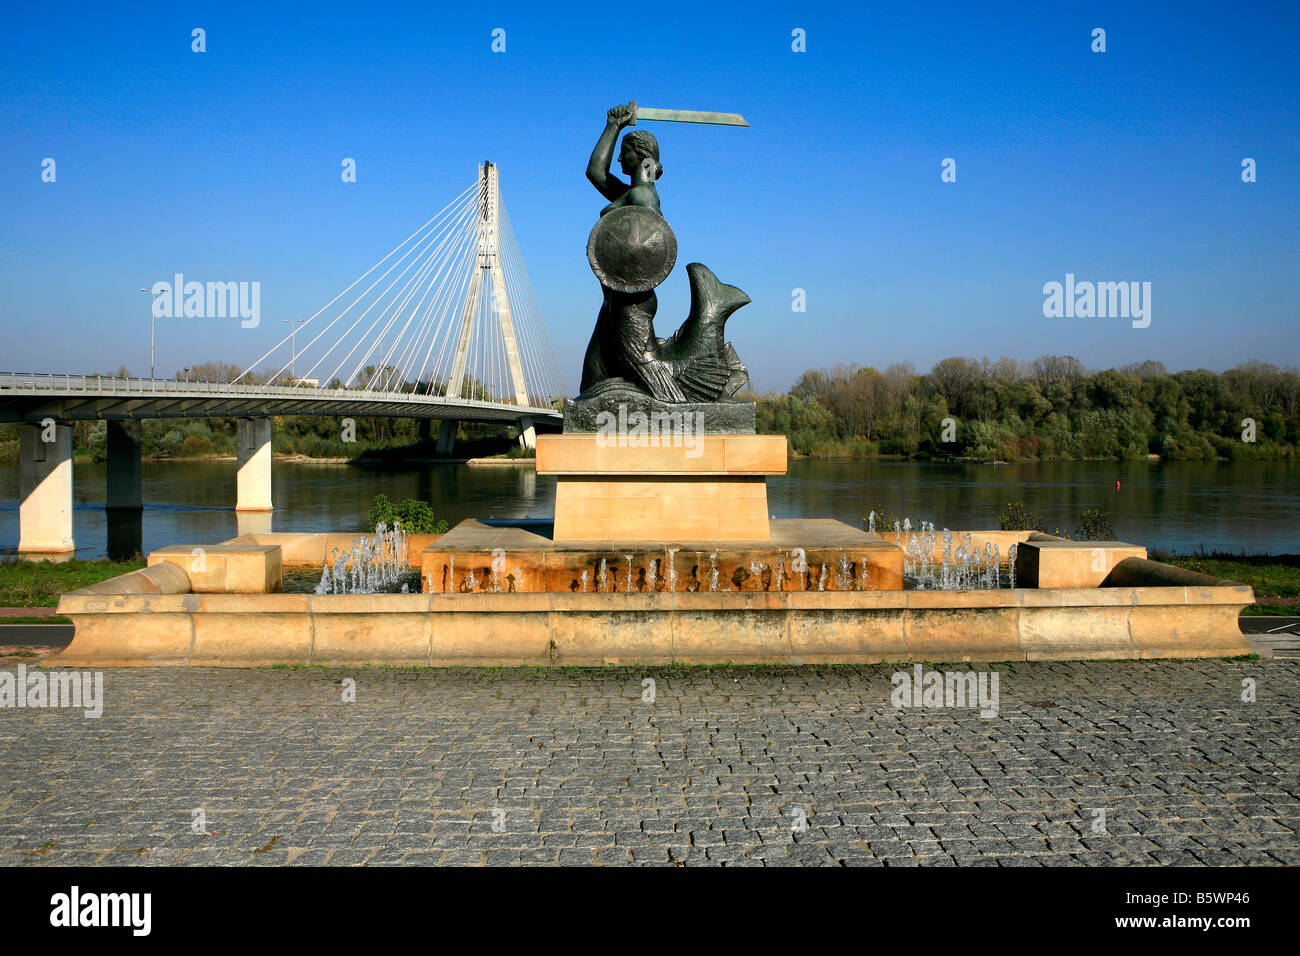 La sirène monument situé près de la Sainte Croix - La plupart Swietokrzyski Bridge (2000) de l'autre côté de la Vistule, à Varsovie, Pologne Banque D'Images